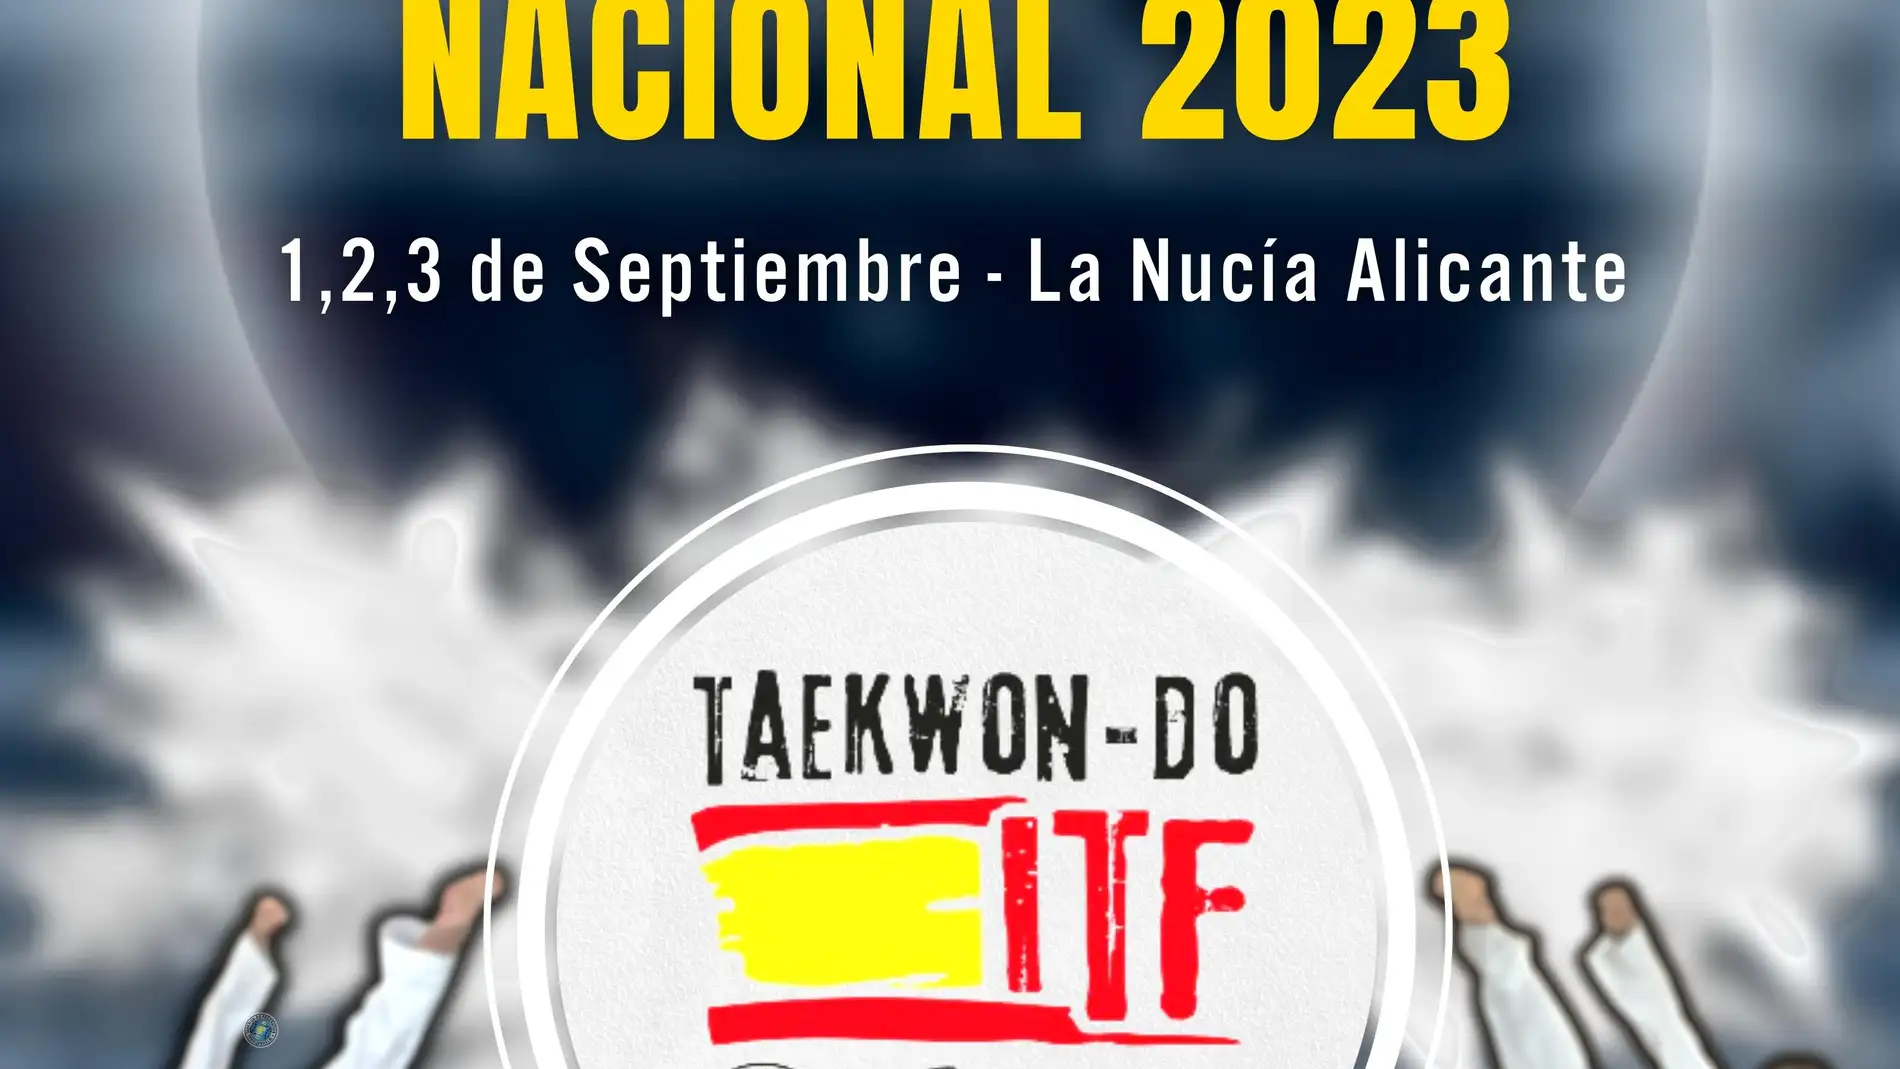 Congreso Nacional Anual 2023 de Taekwondo ITF en La Nucía